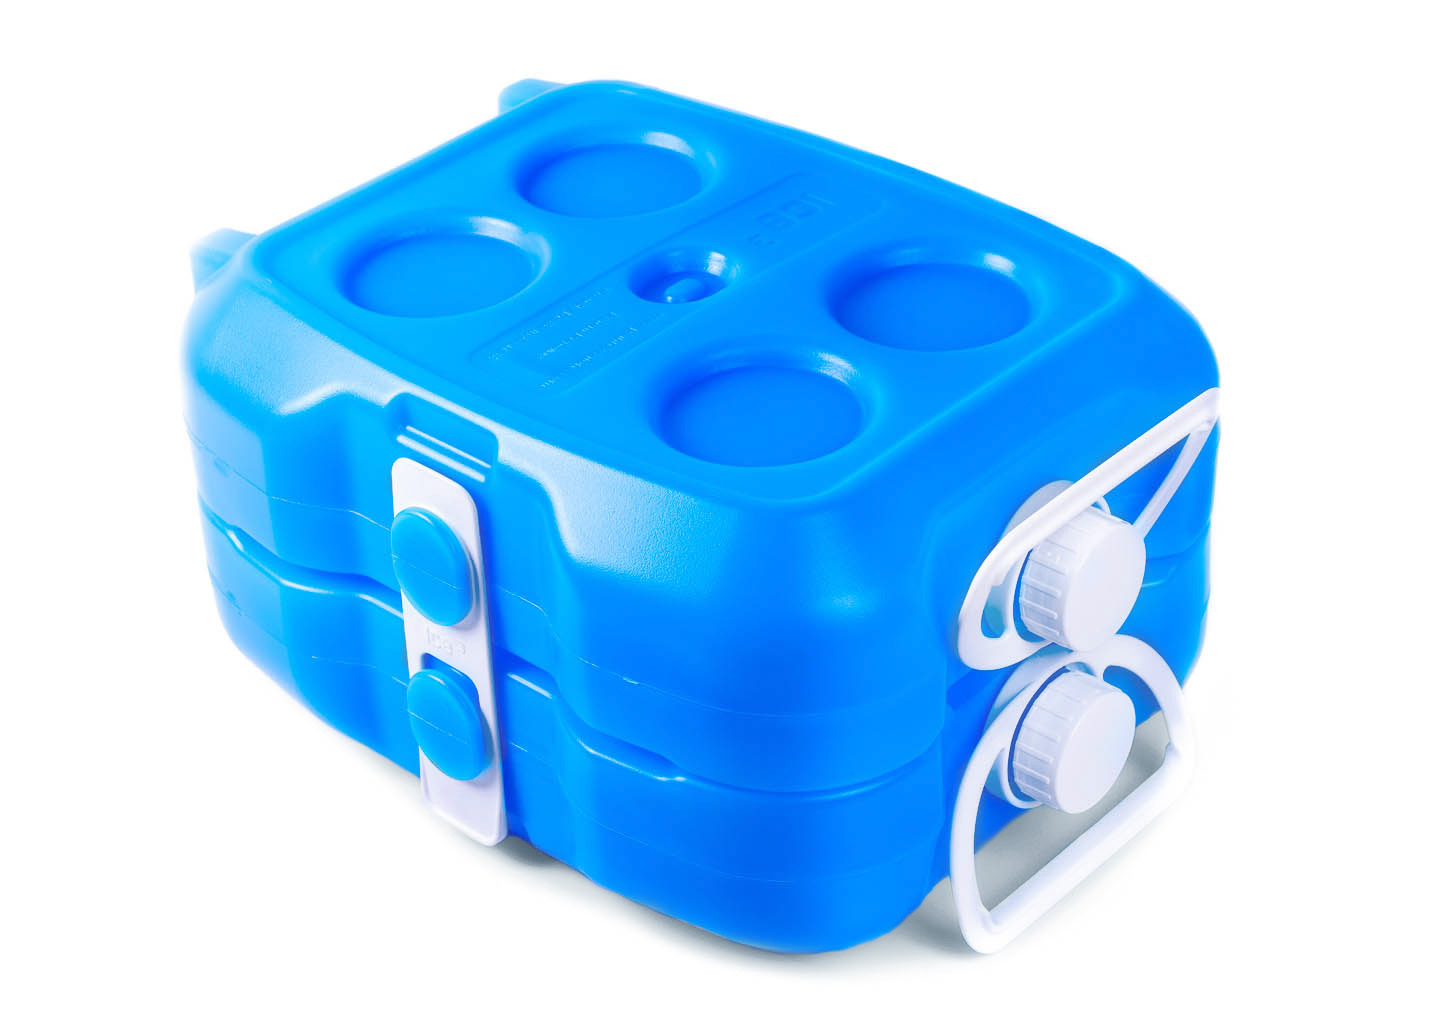 p3-ice-cube-cooler-1440px-5459-c2